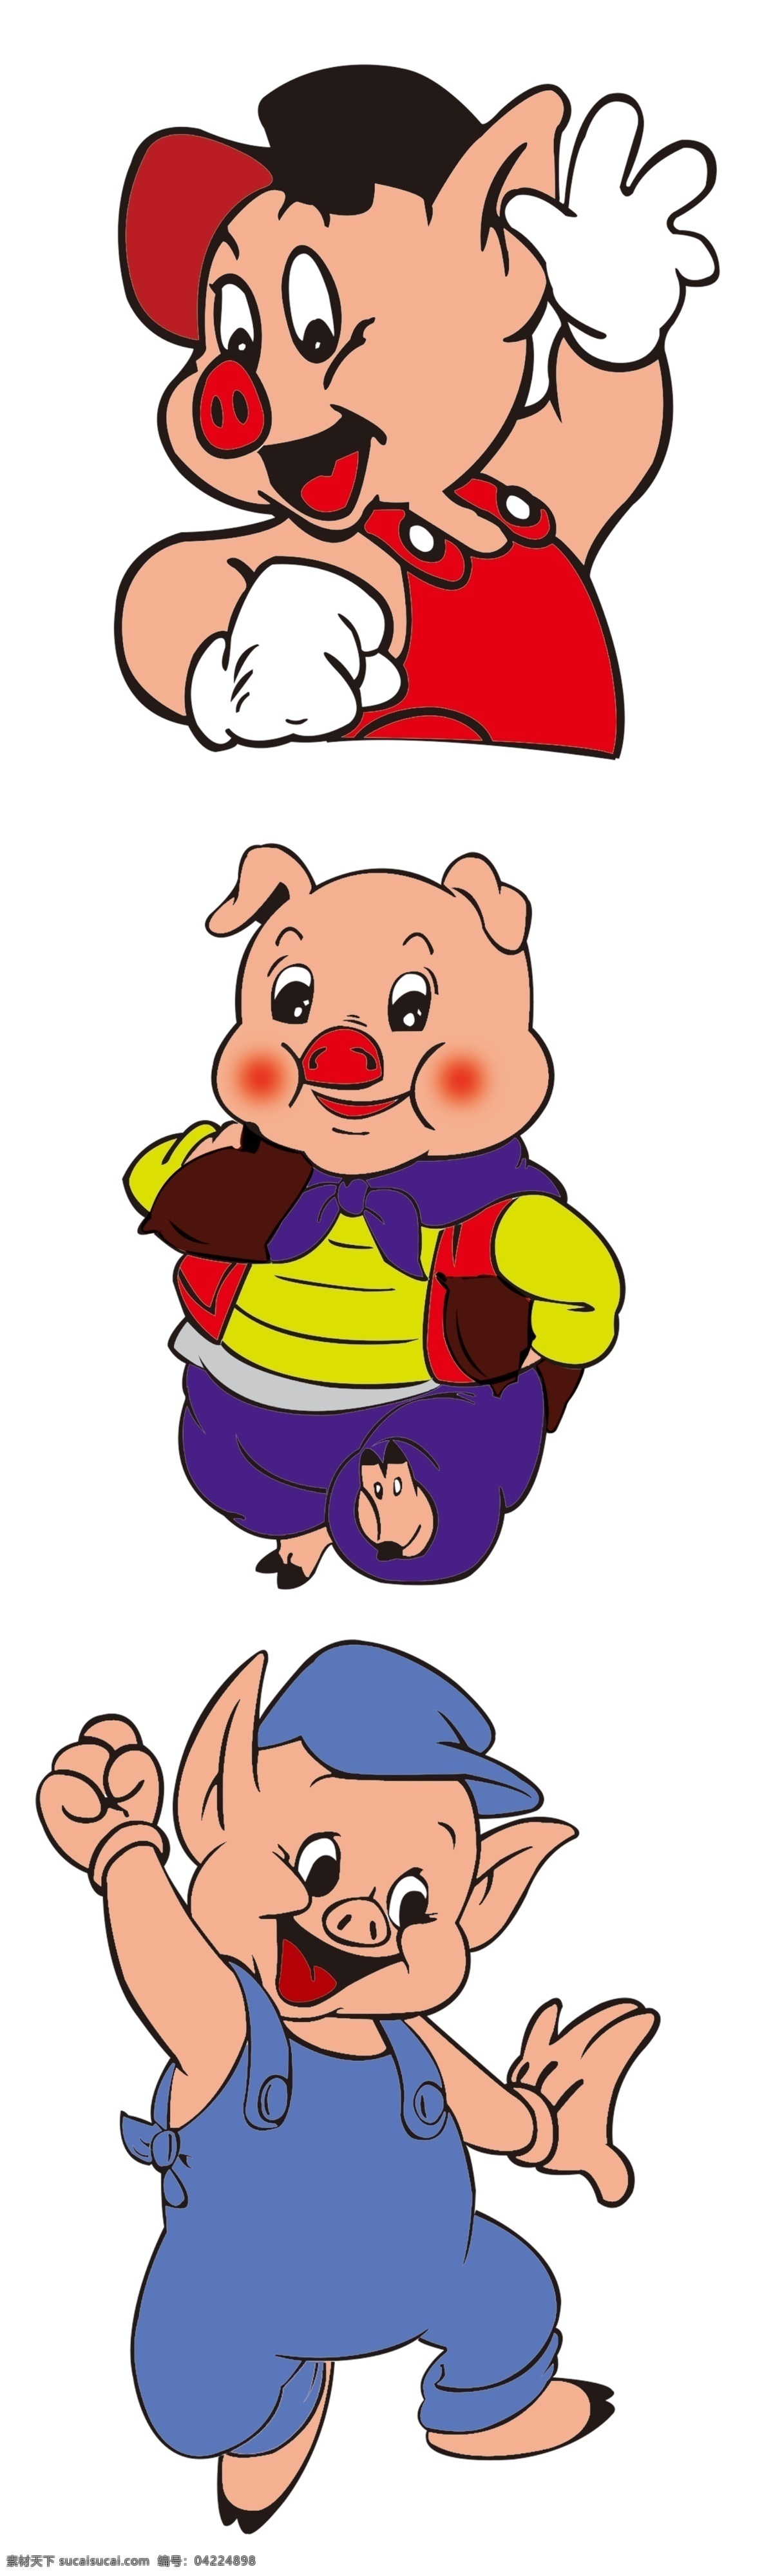 卡通动物 猪 卡通猪 小猪 猪图案 卡通小猪 可爱小猪 卡通 可爱 动物小猪 动物 卡通设计 多个小猪 多种猪 分层